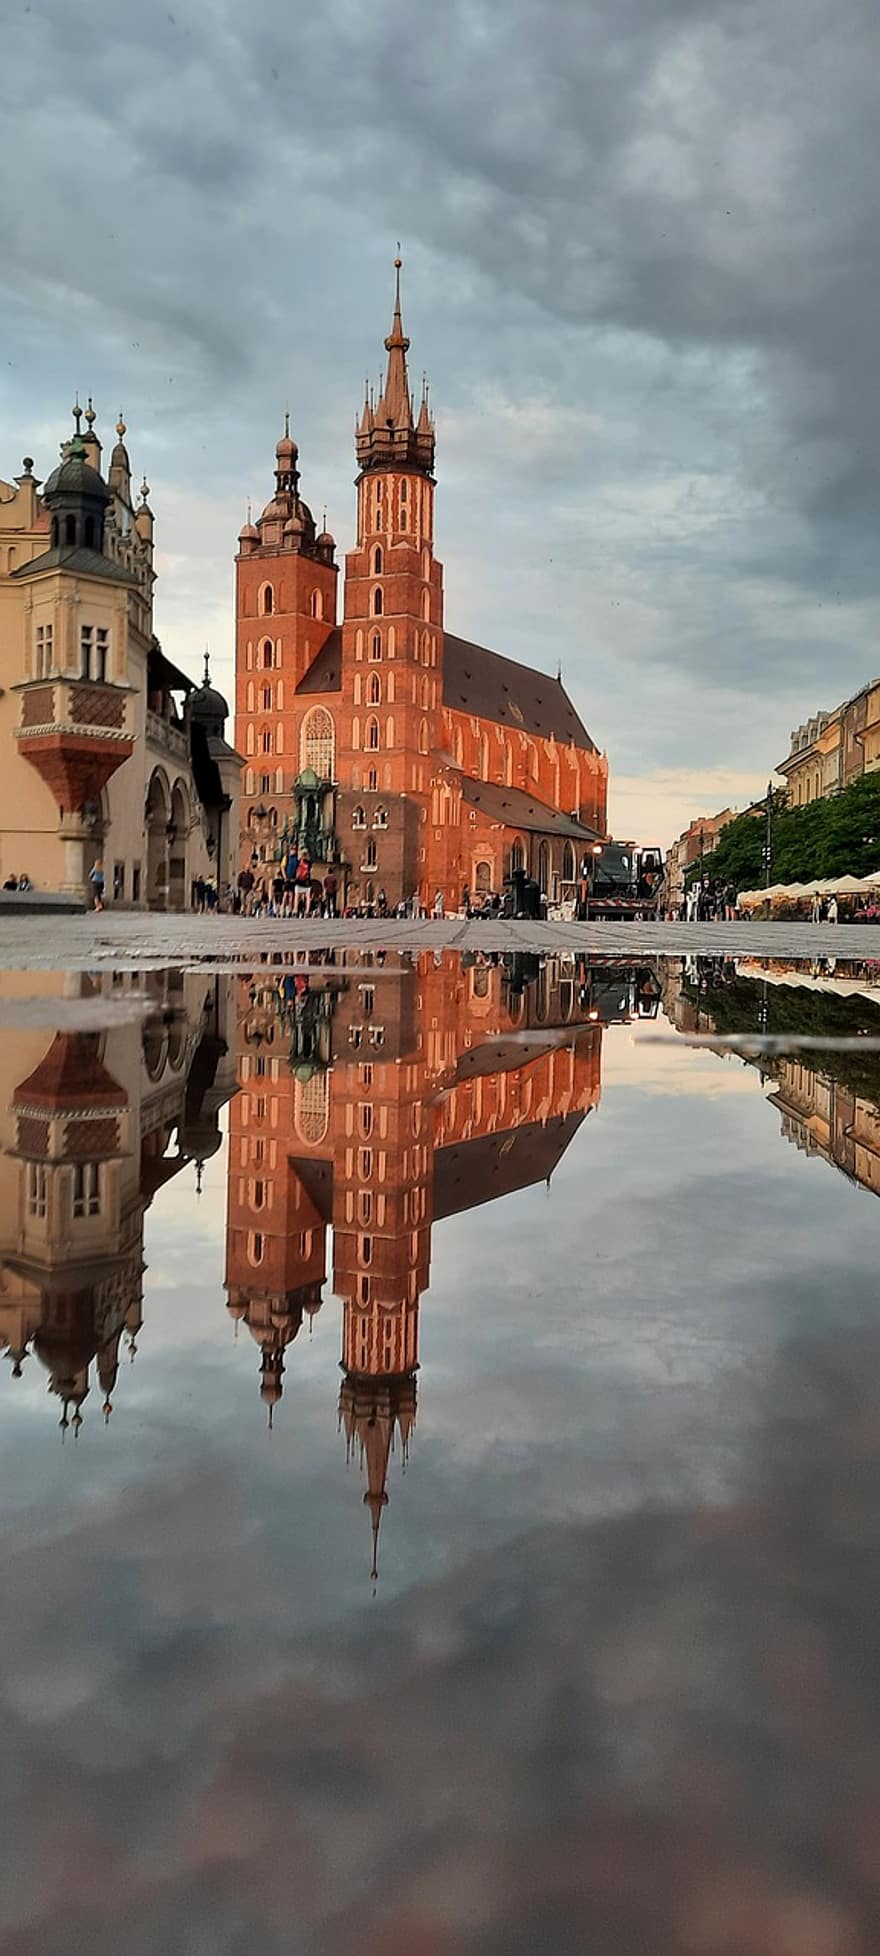 krakow, polen, pöl, stad, vatten, reflexion, St Marys basilika, kyrka, byggnader, marknadsplats, urban